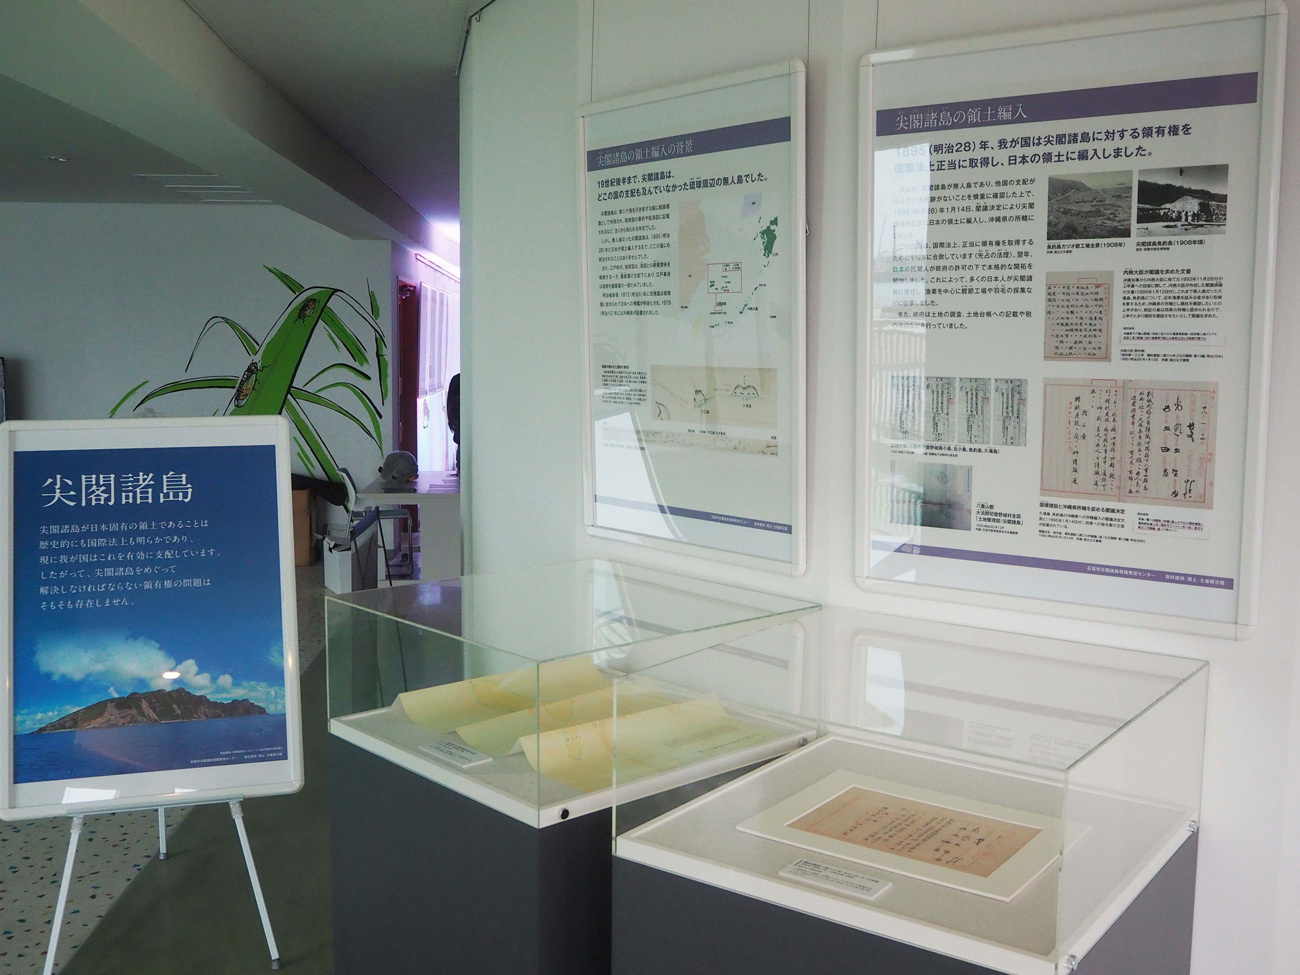 尖閣諸島の歴史、自然環境に関するパネルや歴史的資料のレプリカの展示